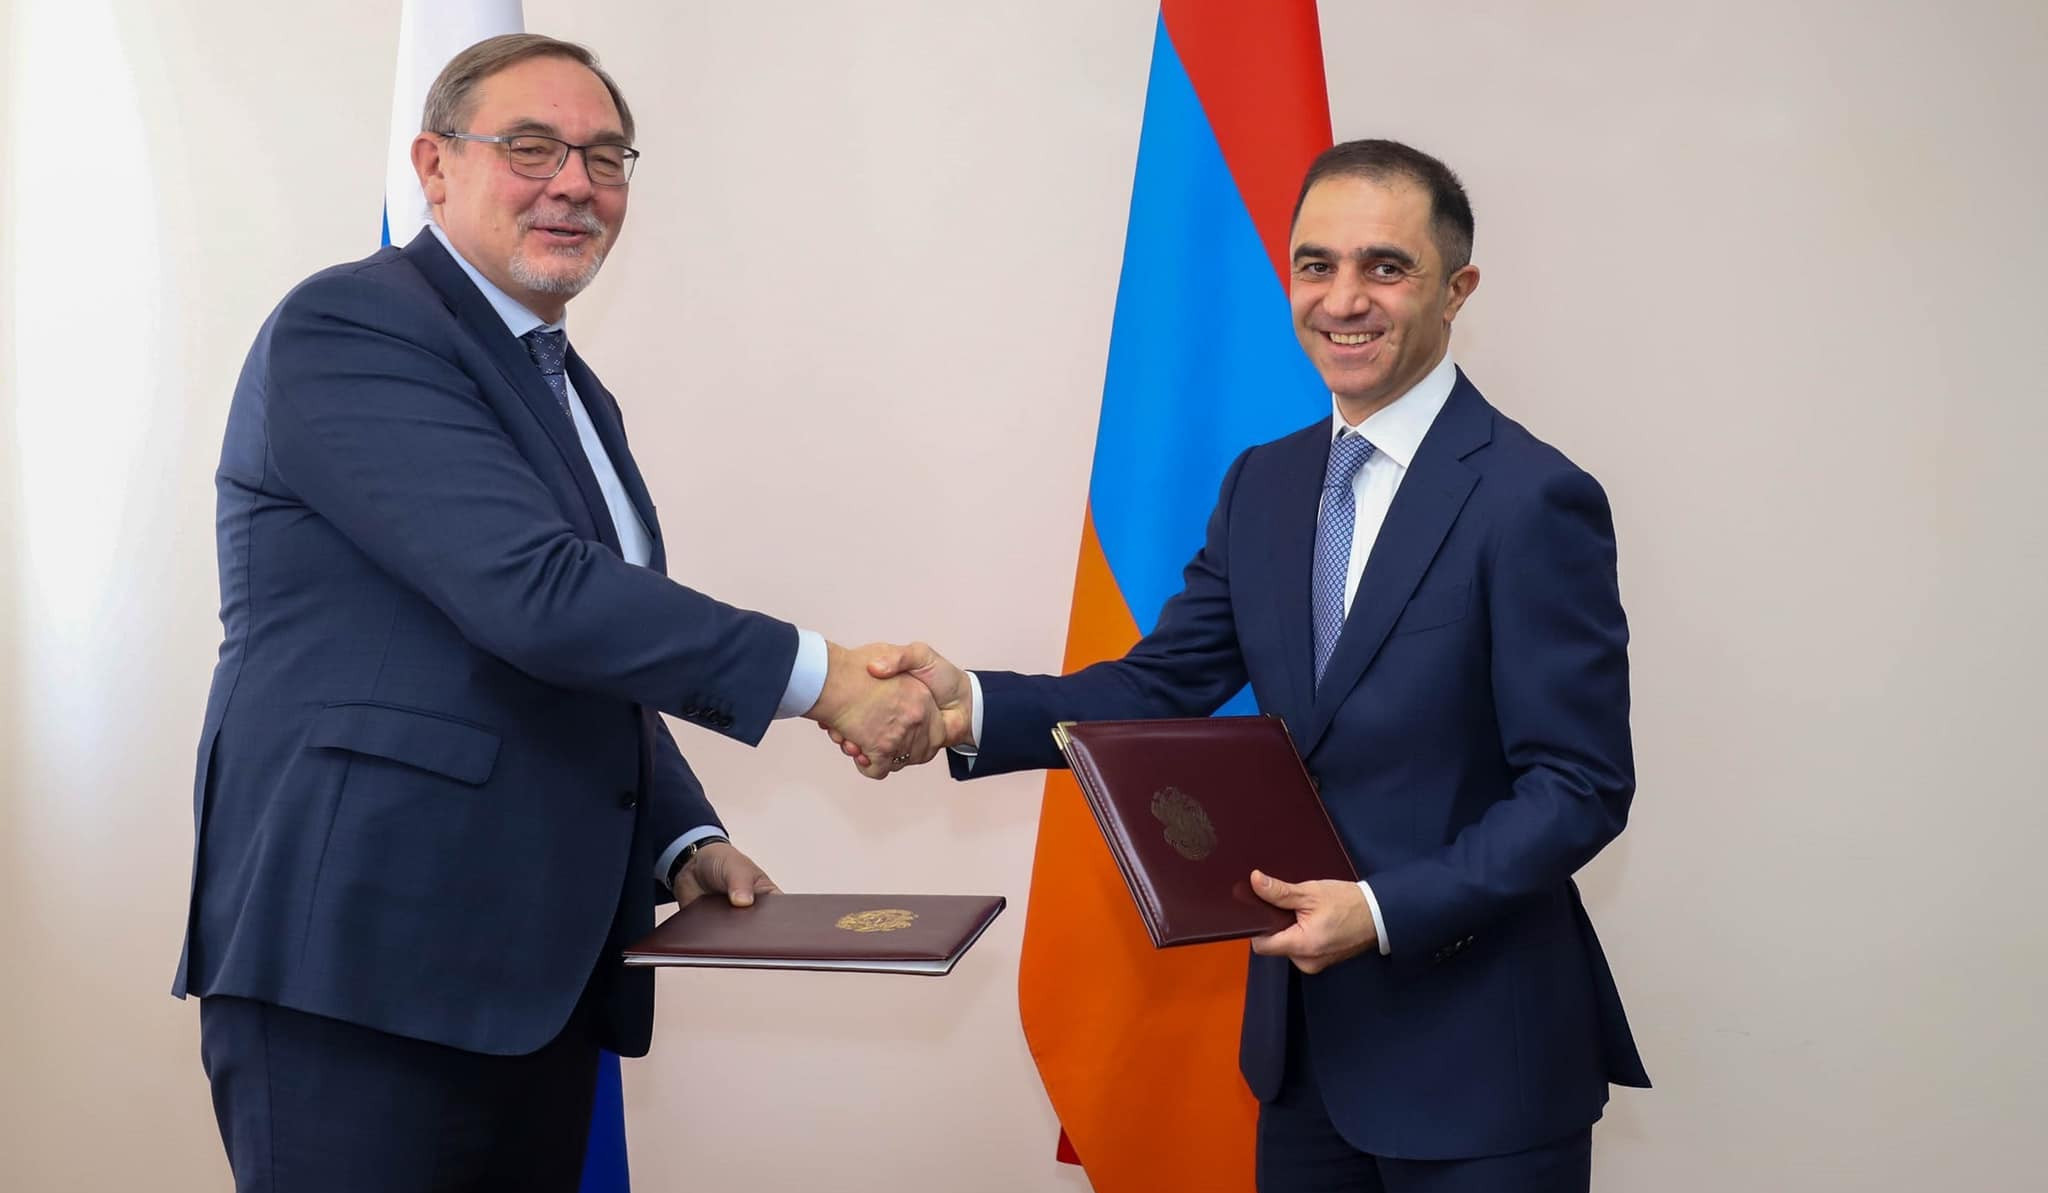 Состоялись очередные консульские консультации между МИД Армении и России